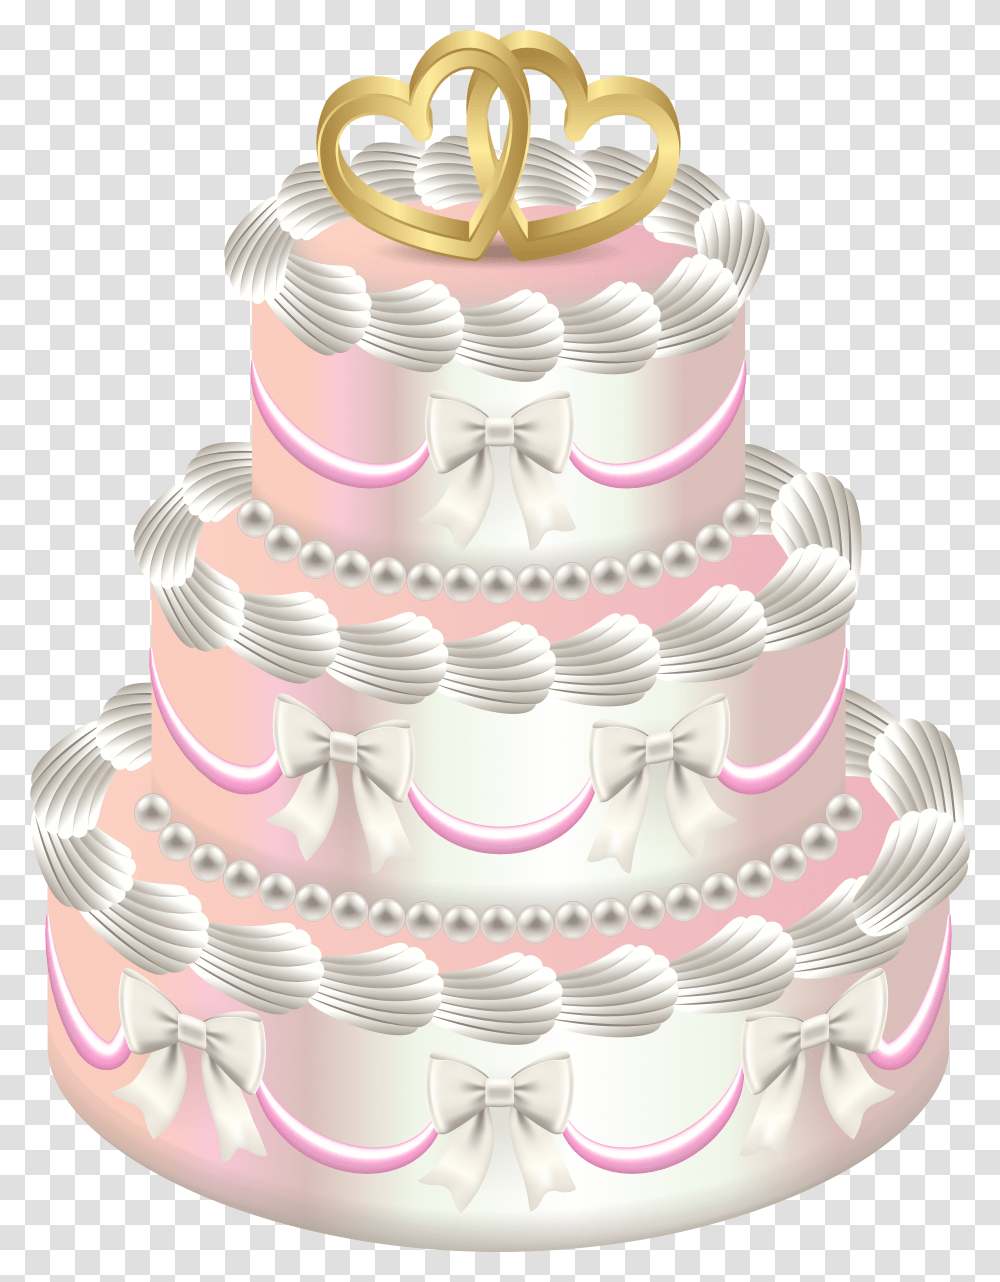 Wedding Deco Cake Clip Art Clip Arts Wedding Cake Transparent Png